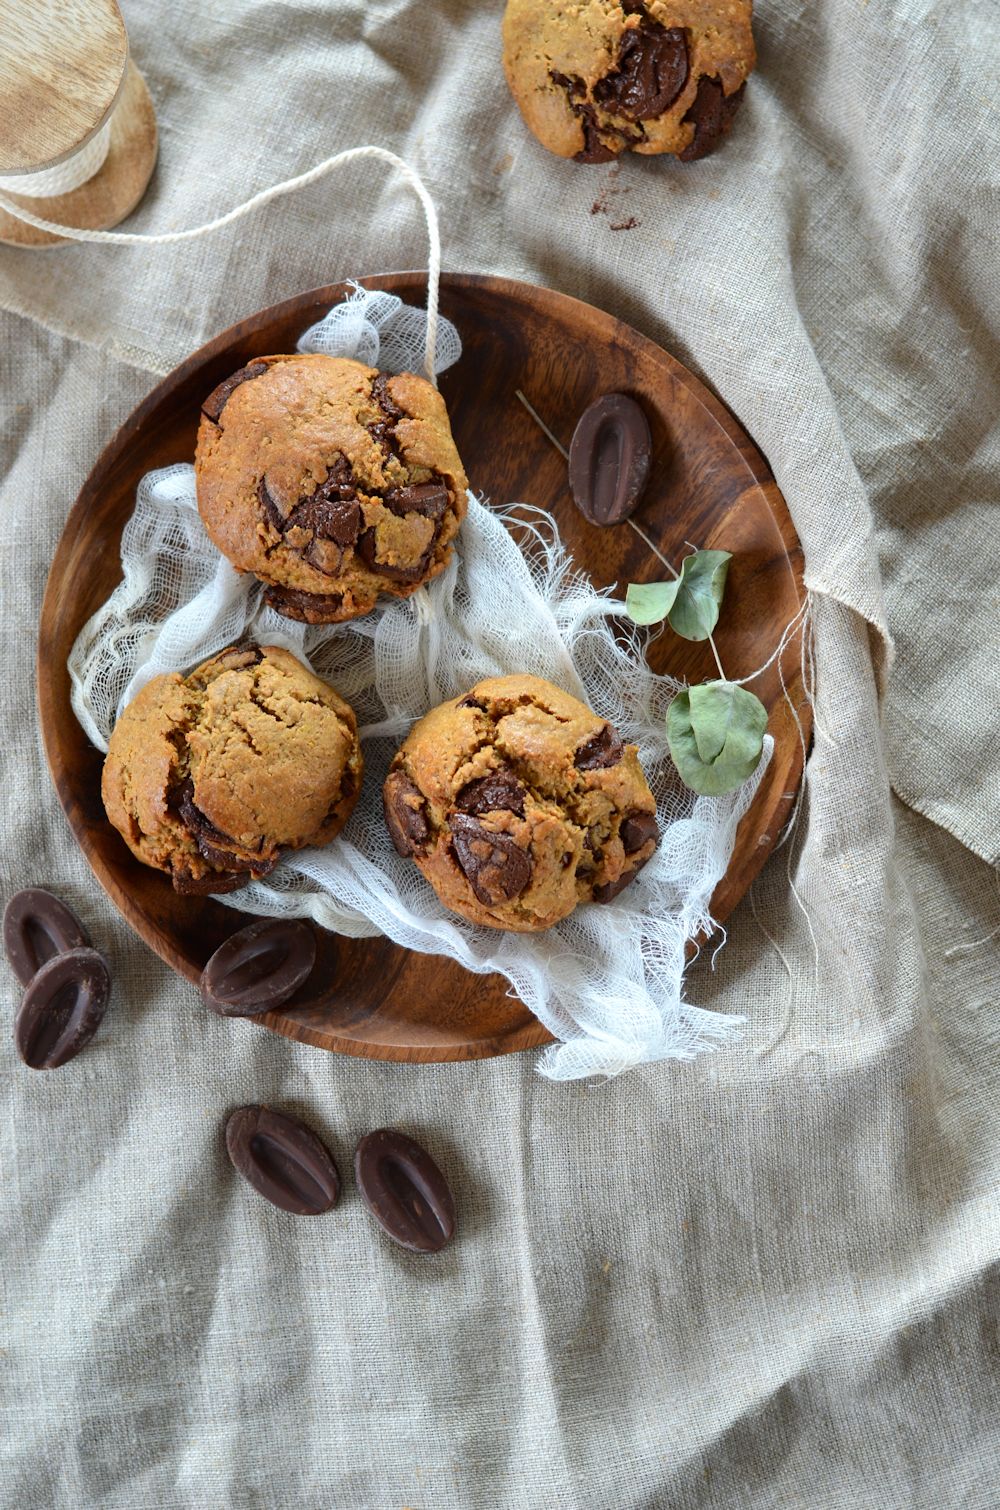 Cookies au beurre de cacahuète et chocolat